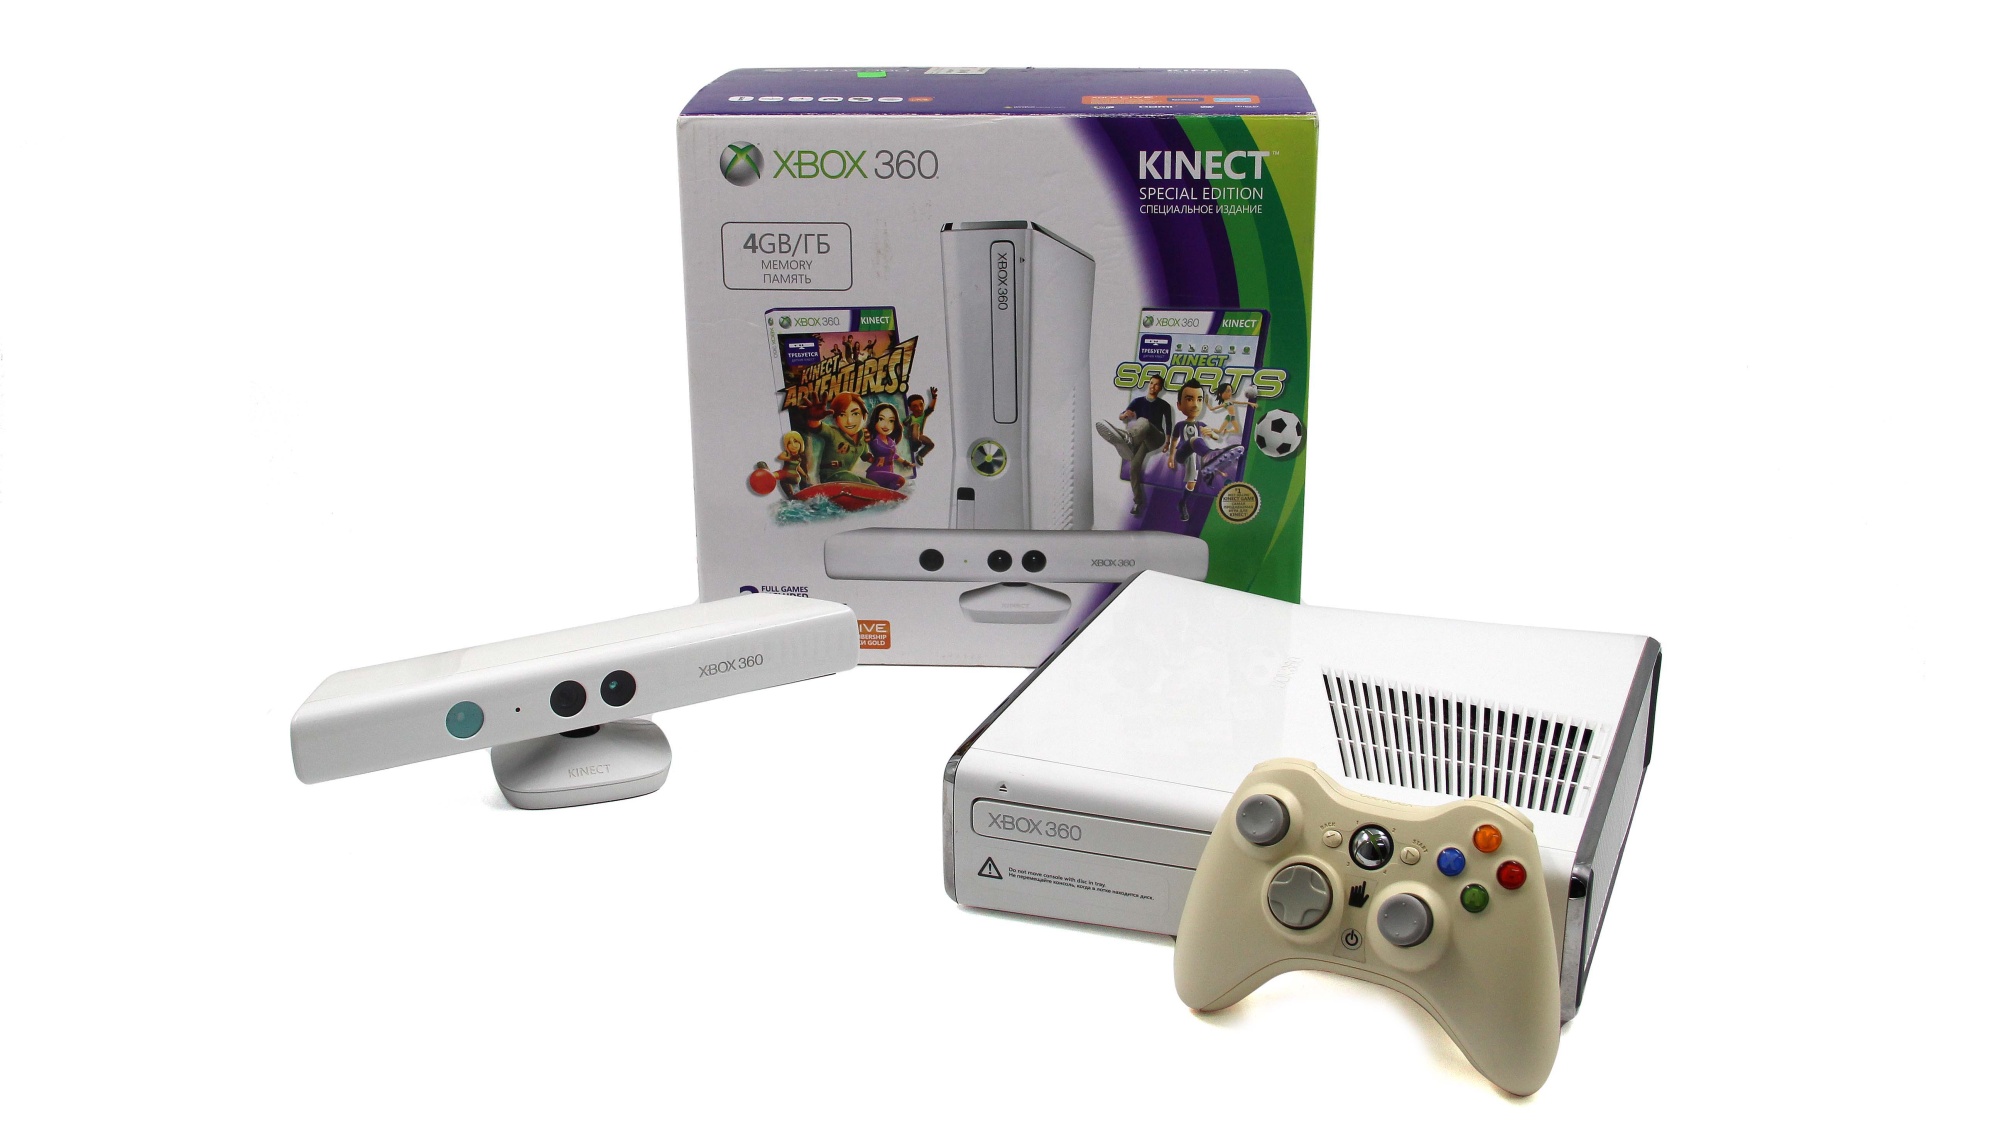 Стационарная приставка. Xbox 360 в коробке с кинект. Xbox 360 в коробке с кинект денс централ. GB приставка. Xbox 360 Kinect как выглядит внутри.